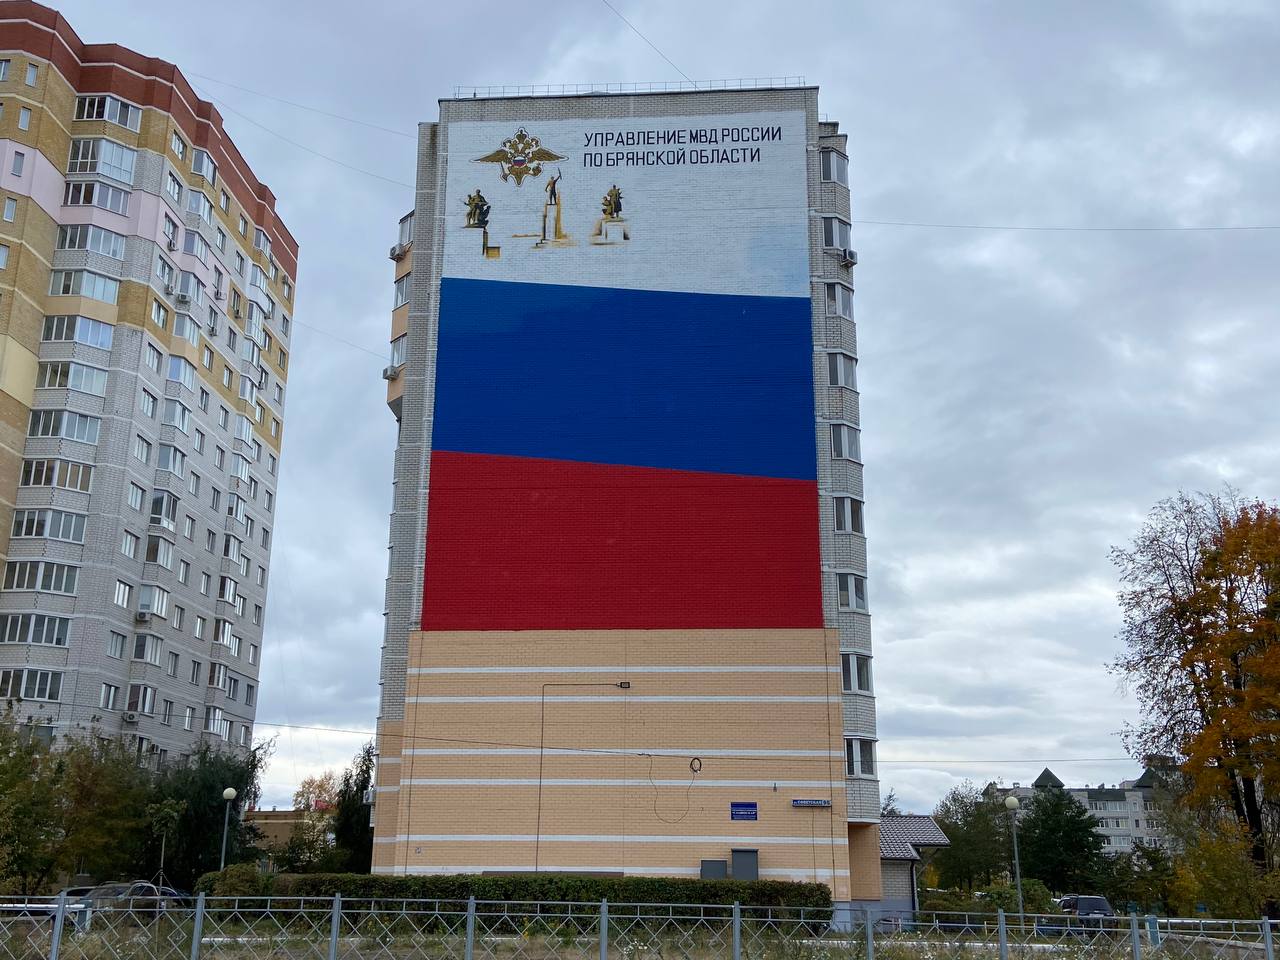 Гигантский российский триколор появился на стене дома в Брянске